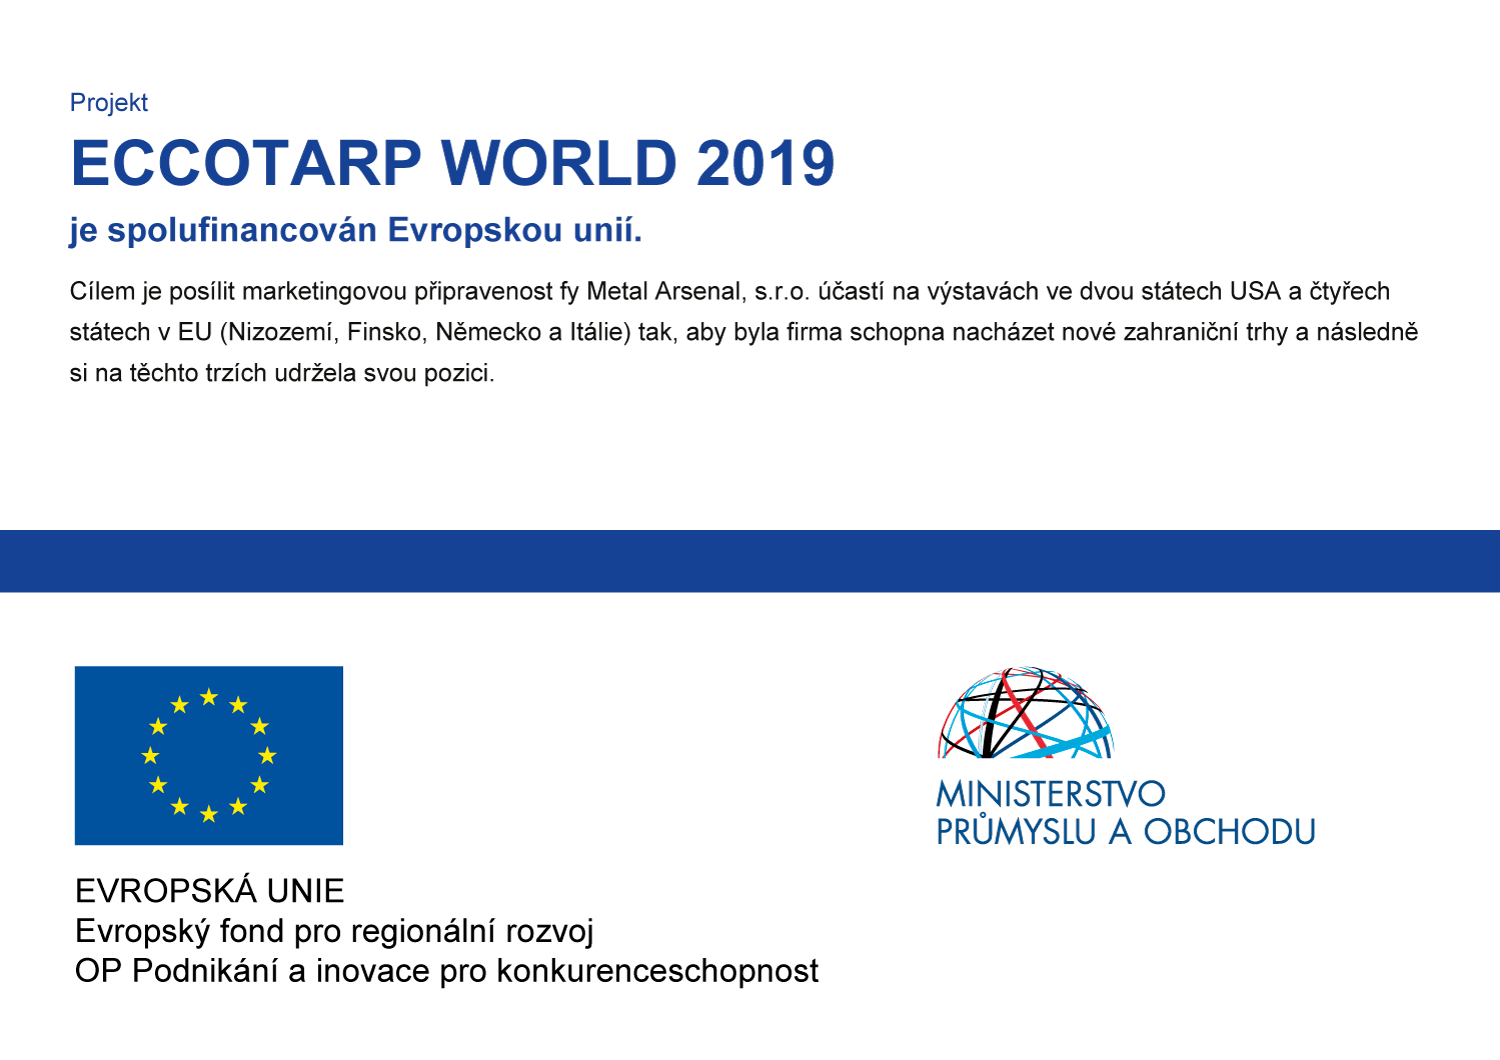 ECCOTARP WORLD 2019 je spolufinancován Evropskou unií